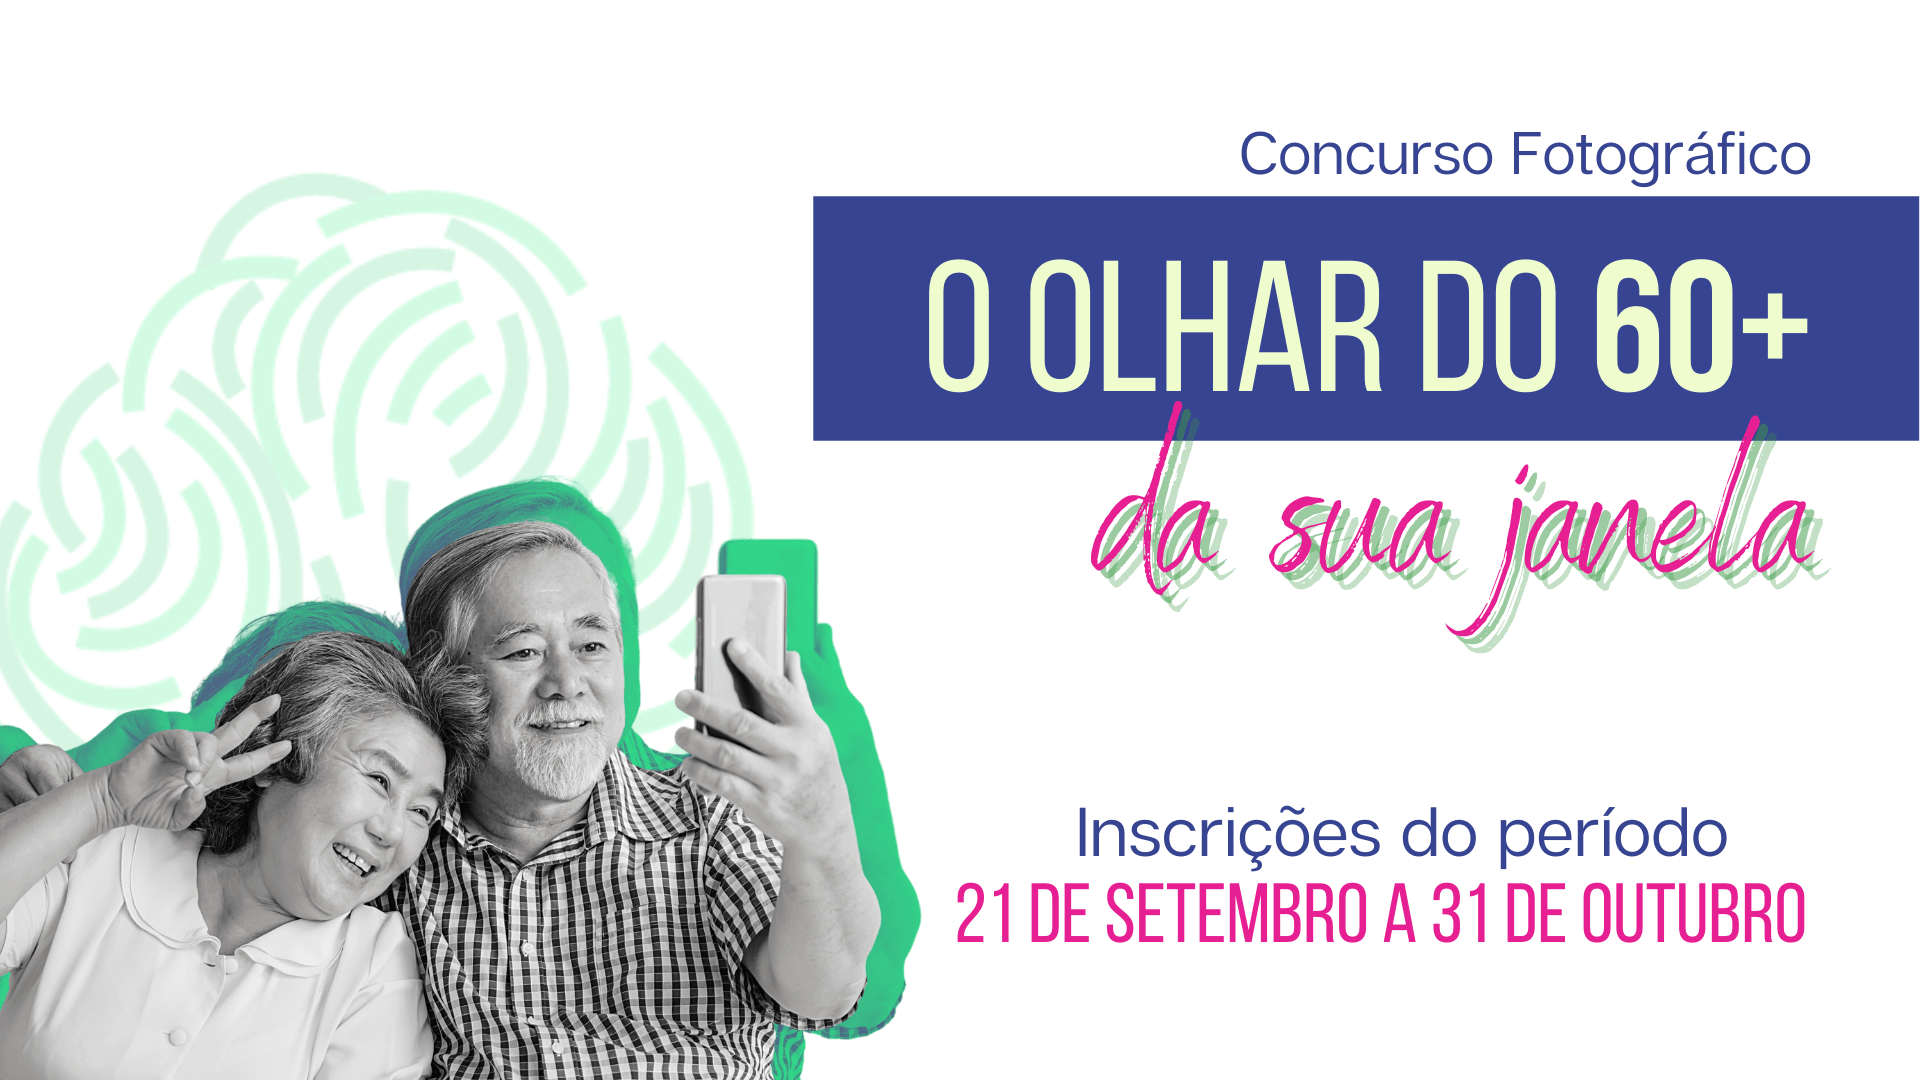 (Português) Concurso fotográfico para o público 60+ prorroga inscrições